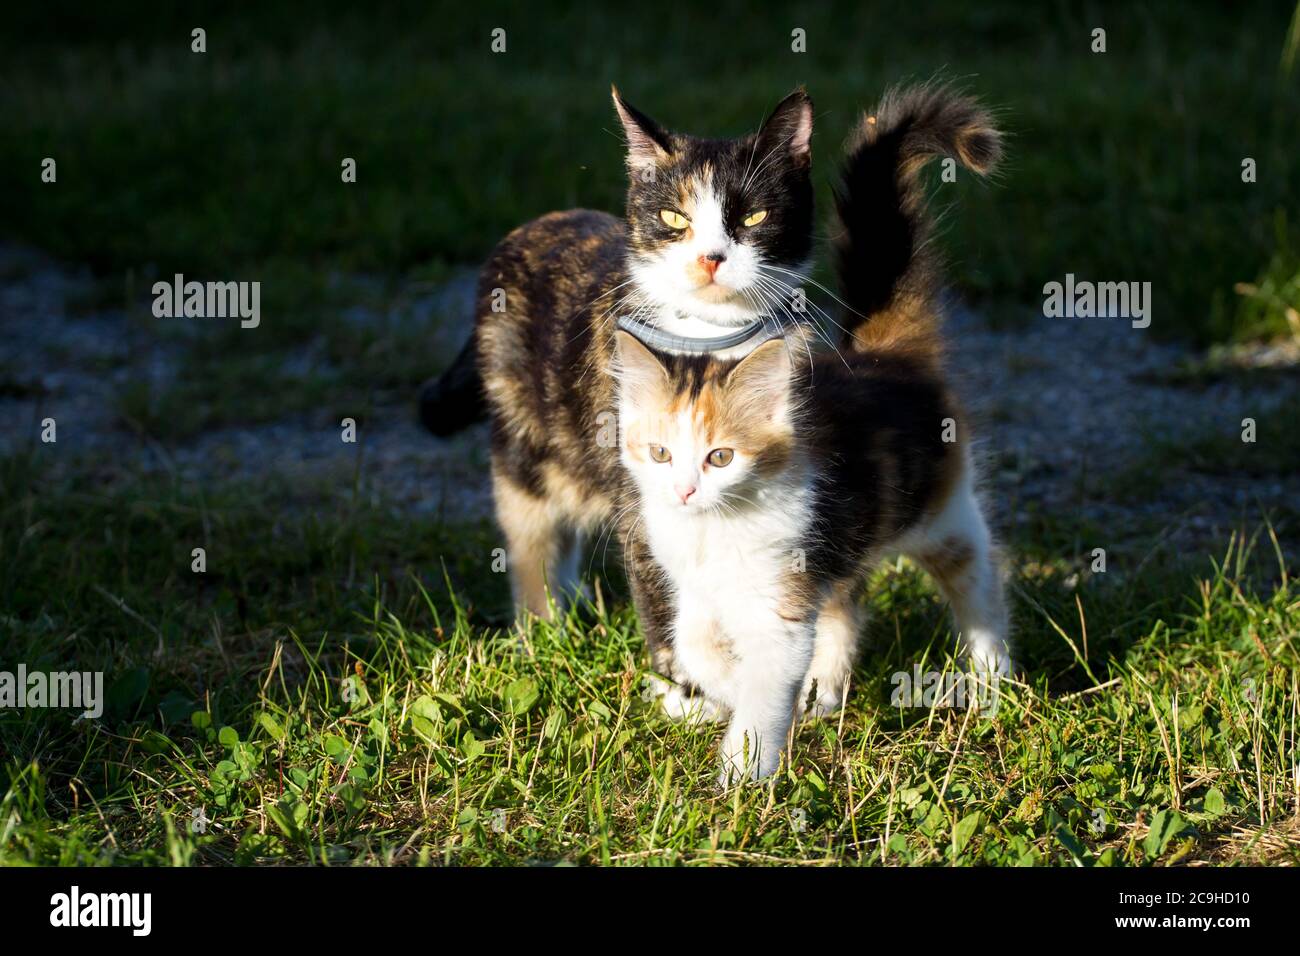 Gatos de granja, una madre y su gatito Foto de stock